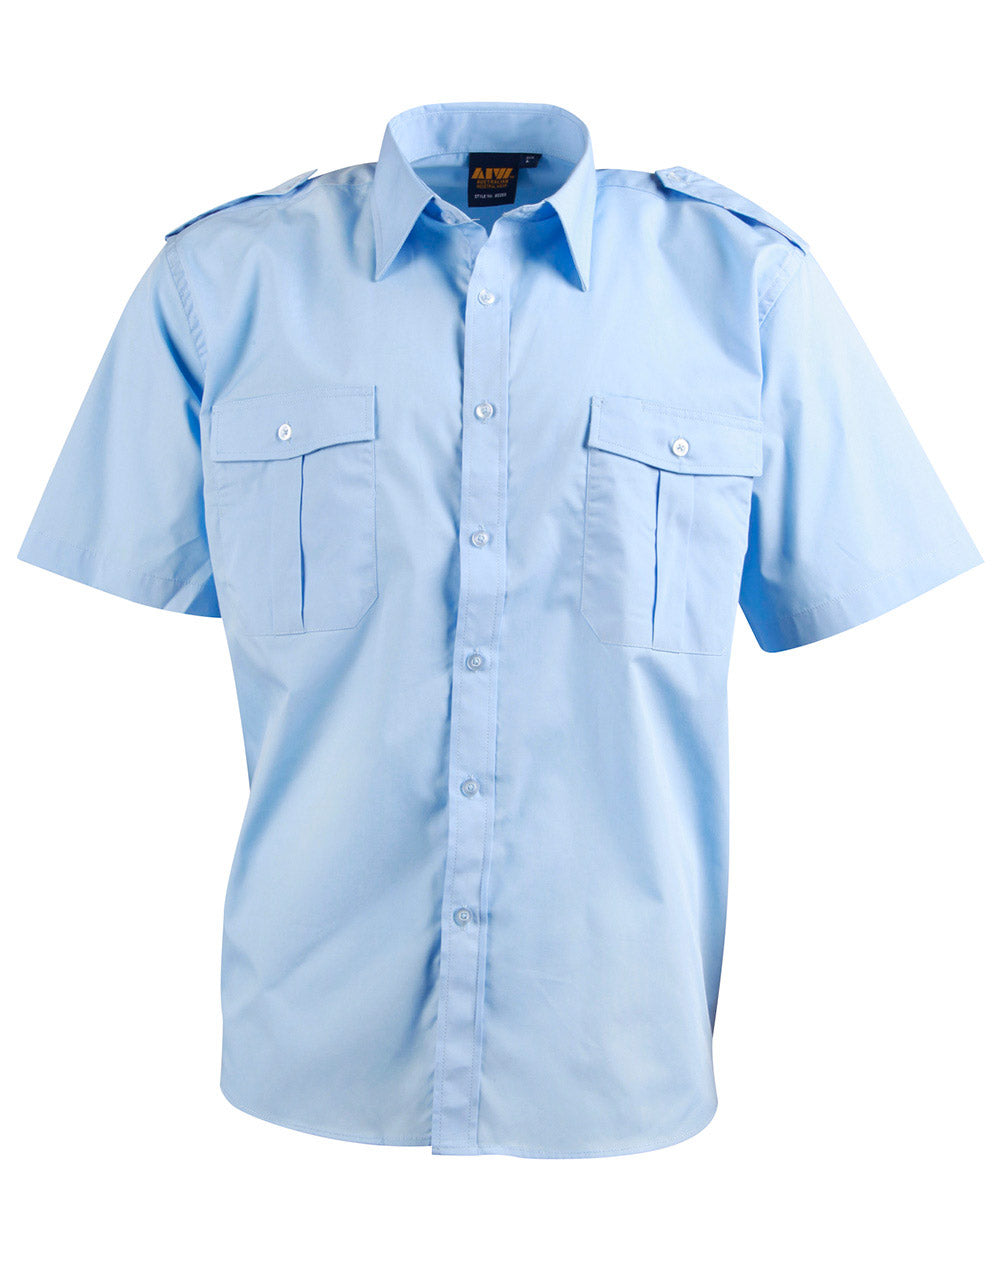 [BS06S] Unisex epaulette shirt ,short sleeve.